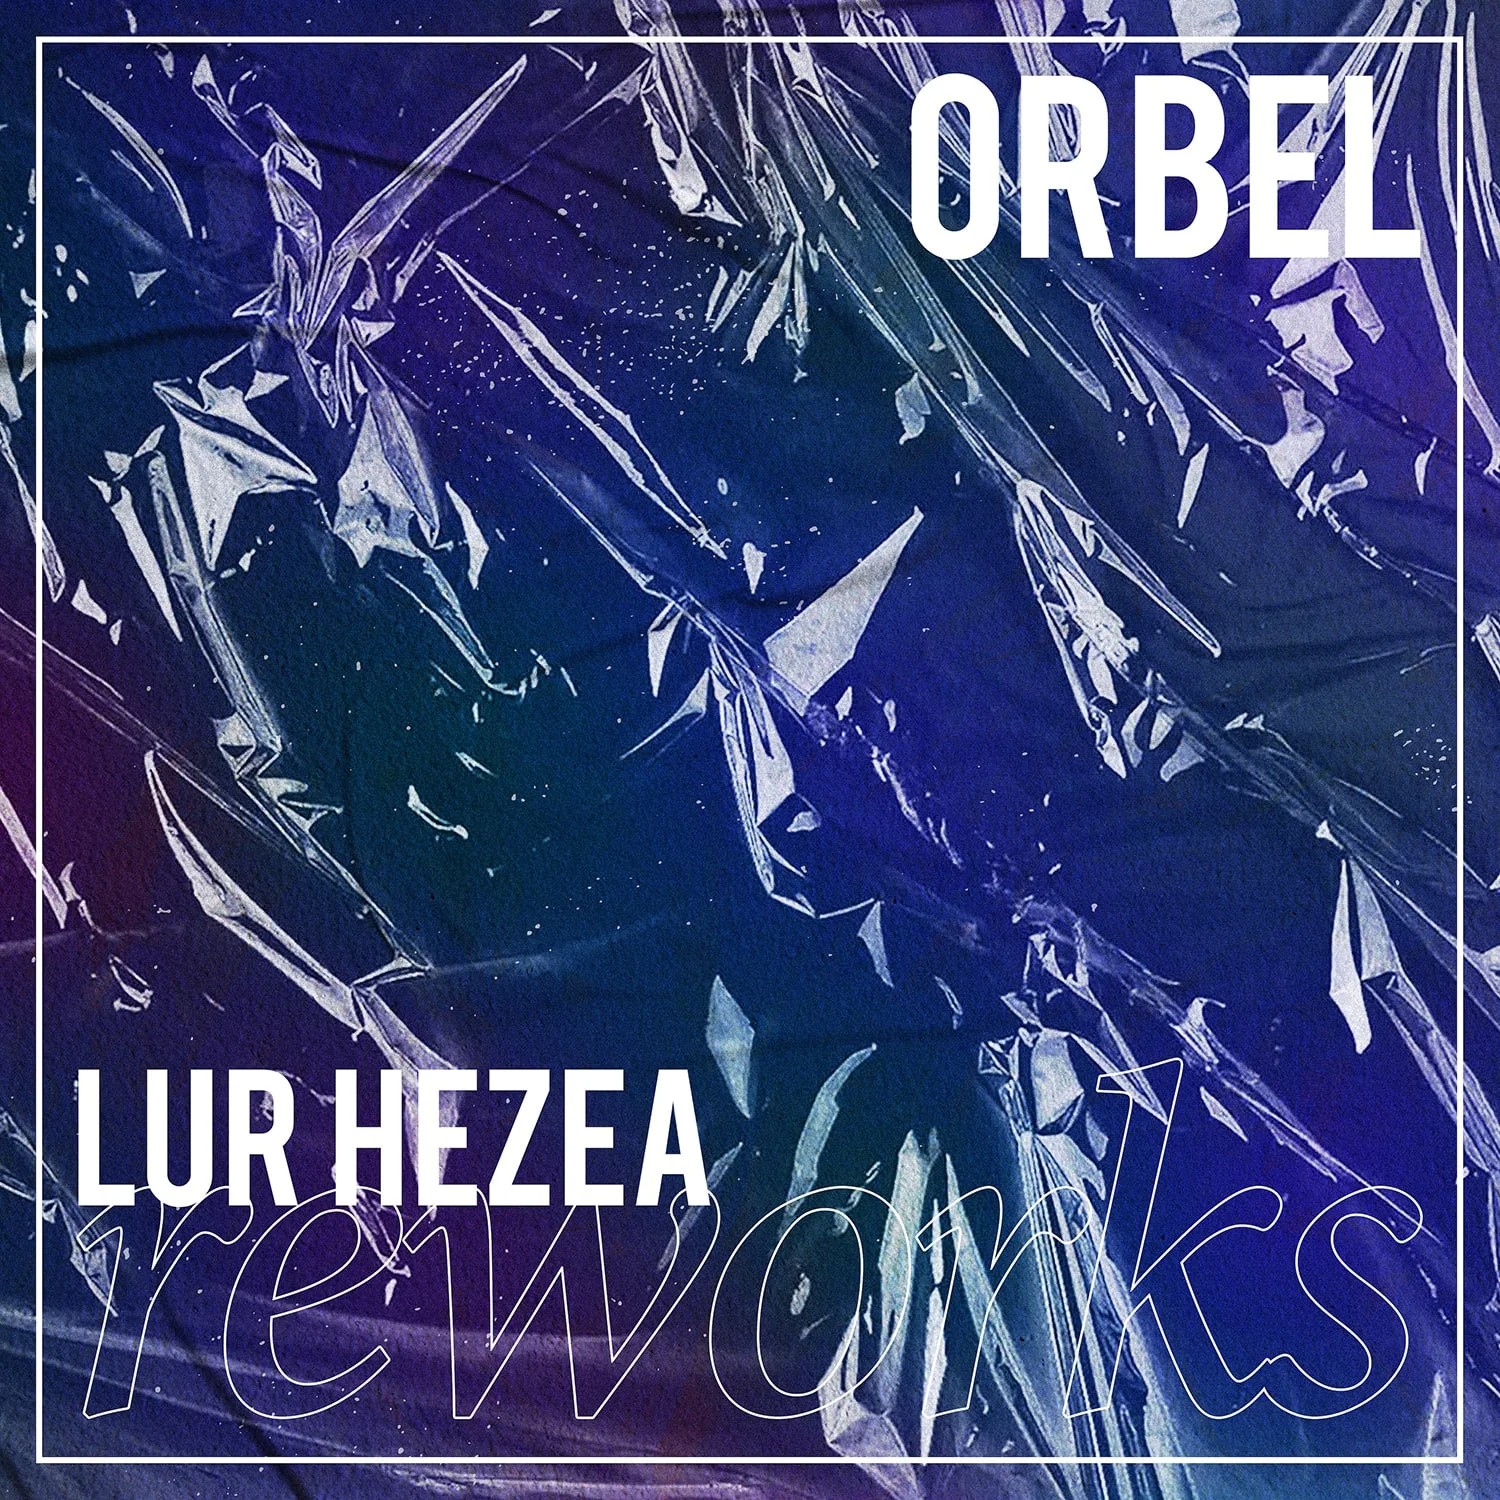 Artwork for the album ‘Fur Hezea Reworks’ by Orbel